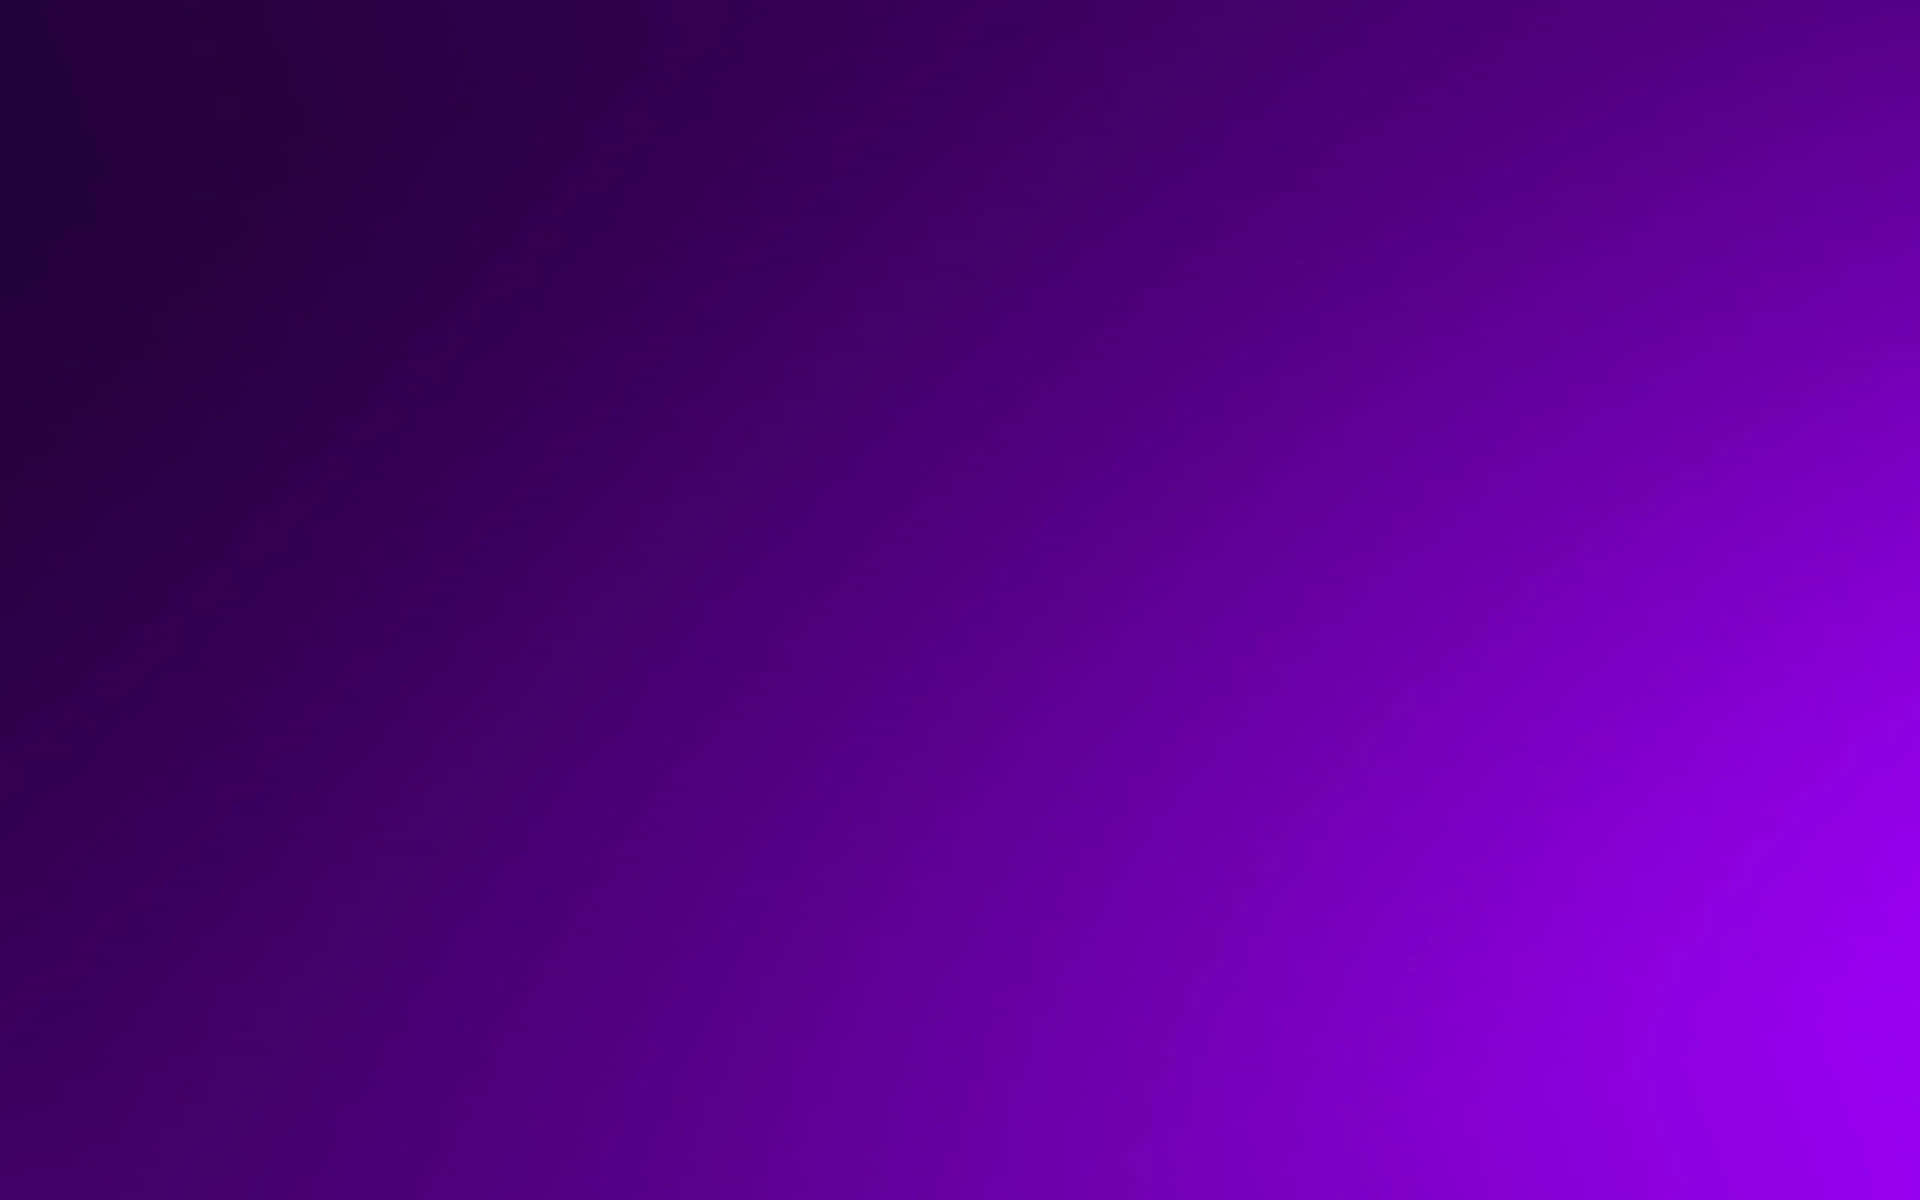 Fondode Pantalla Oscuro Con Gradiente De Color Púrpura Y Estética Paisajística.